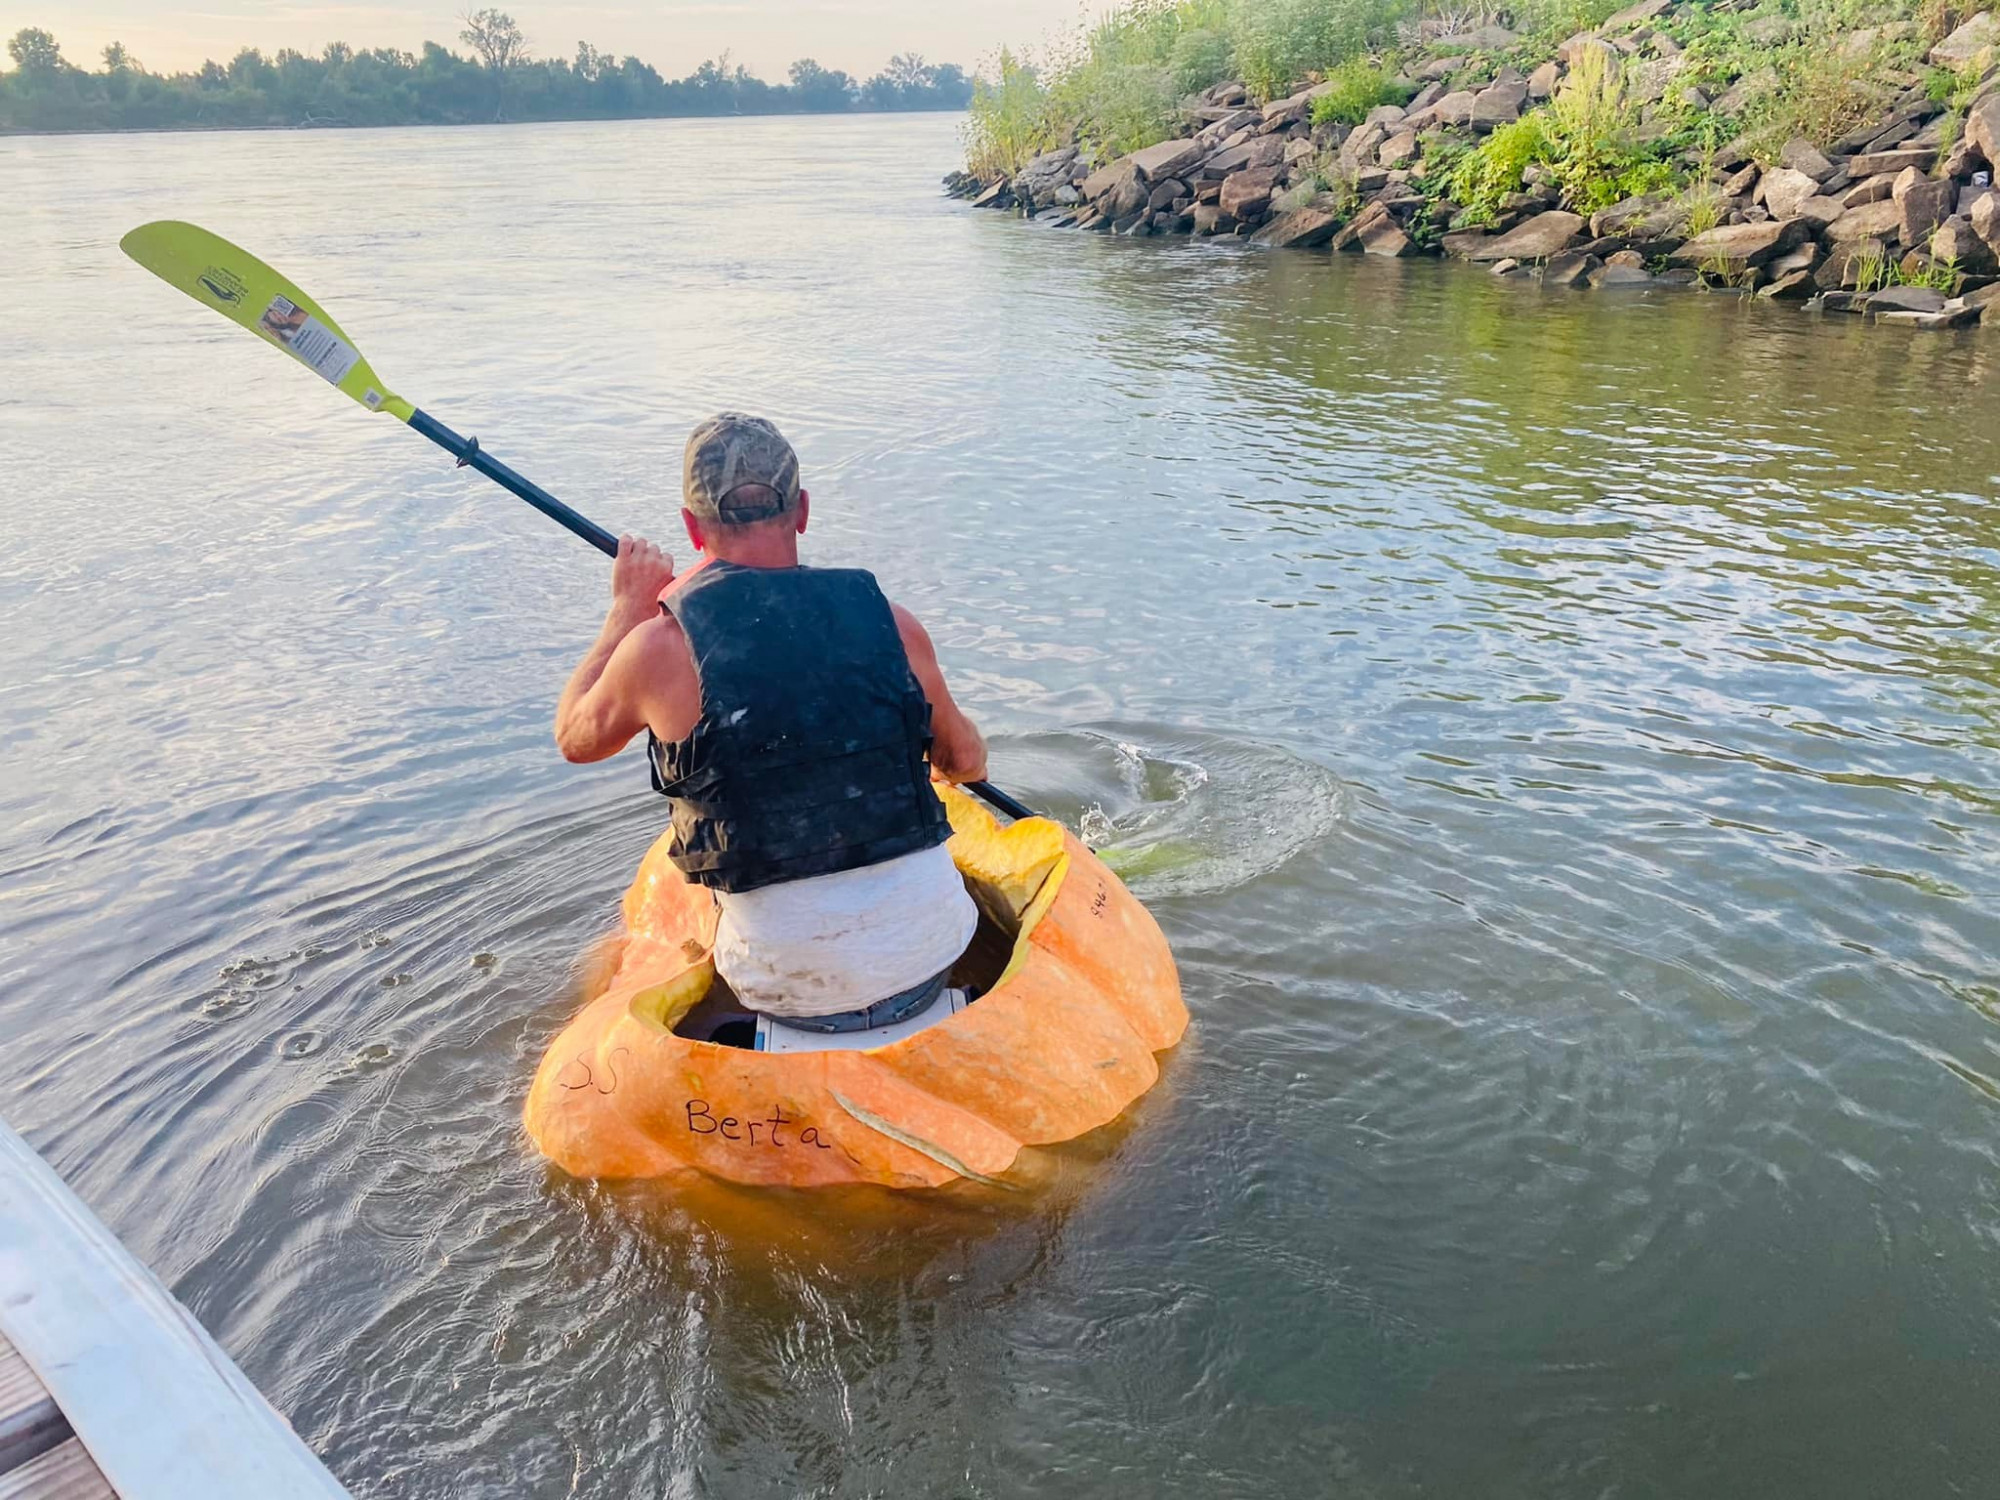 Egy nebraskai ember 60 kilométert evezett egy kivájt tökben a Missouri folyón, és ezzel megdöntötte a világrekordot